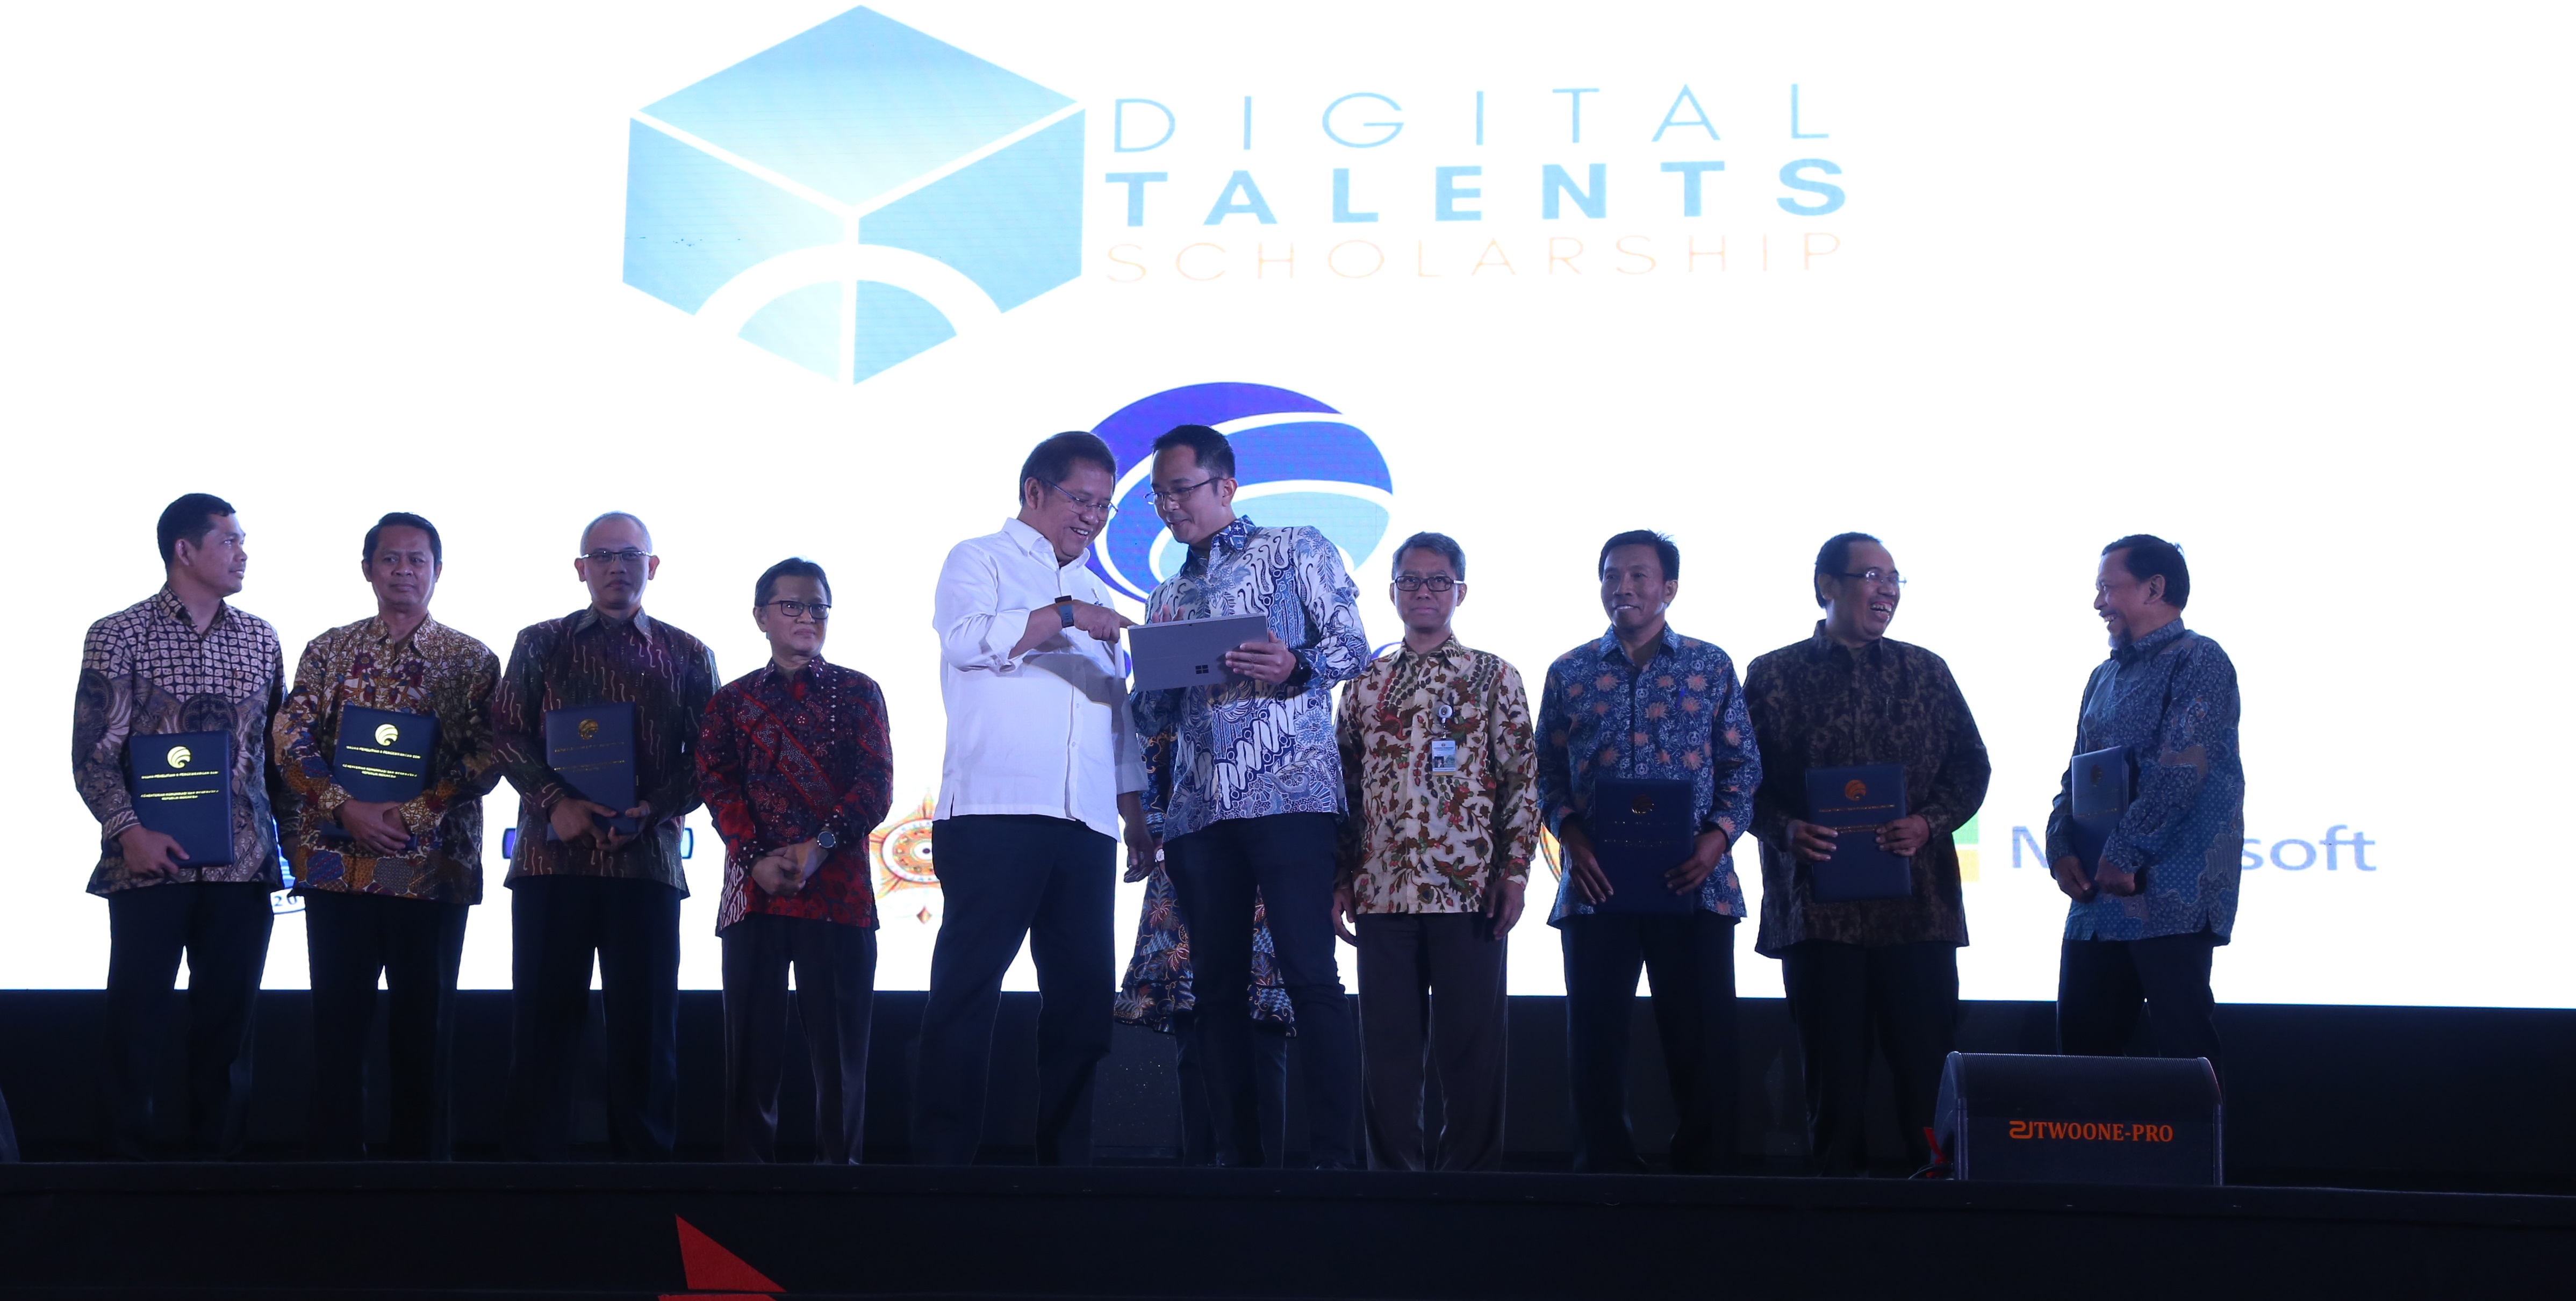 Rudiantara, Menteri Komunikasi dan Informatika Republik Indonesia bersama Haris Izmee, Direktur Utama Microsoft Indonesia pada saat seremoni yang menandai sinergisme multisektoral untuk mencapai generasi muda Indonesia cakap digital yang berdaya saing